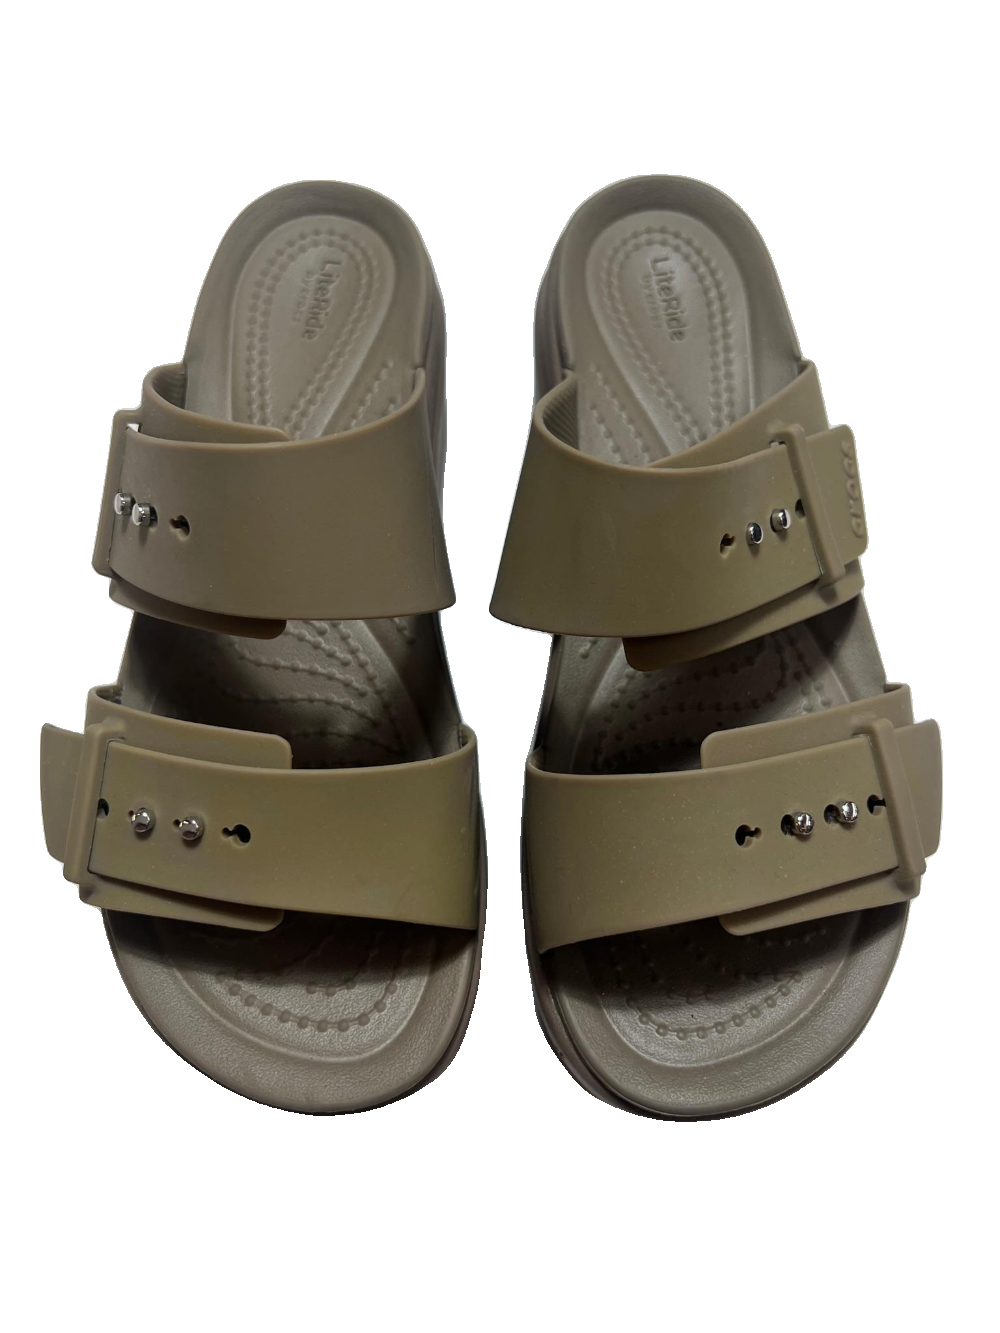 Crocs- Green Sandals